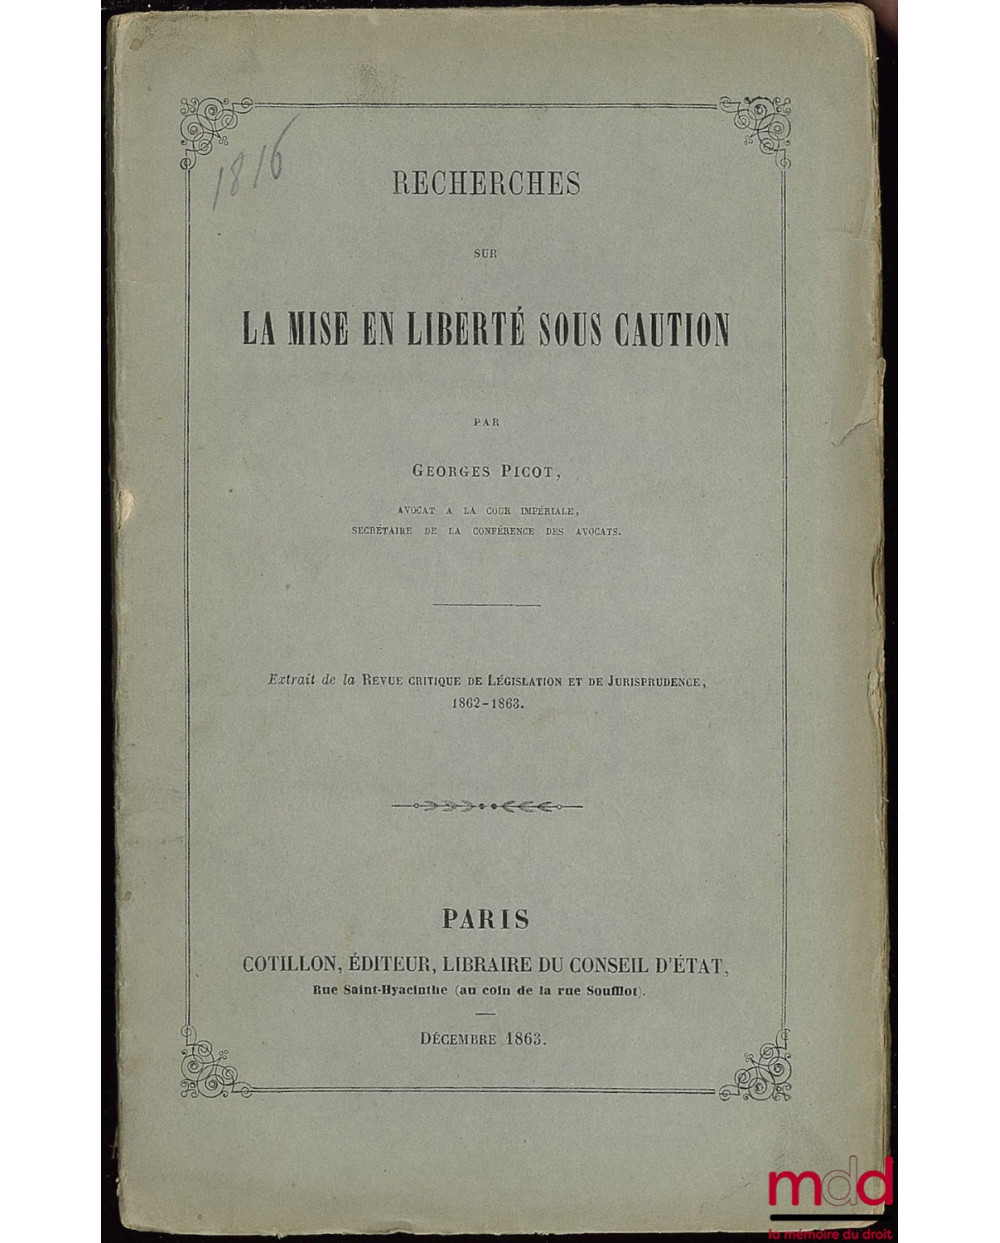 RECHERCHES SUR LA MISE EN LIBERTÉ SOUS CAUTION, extrait de la Revue critique de législation et de jurisprudence, 1862-1863